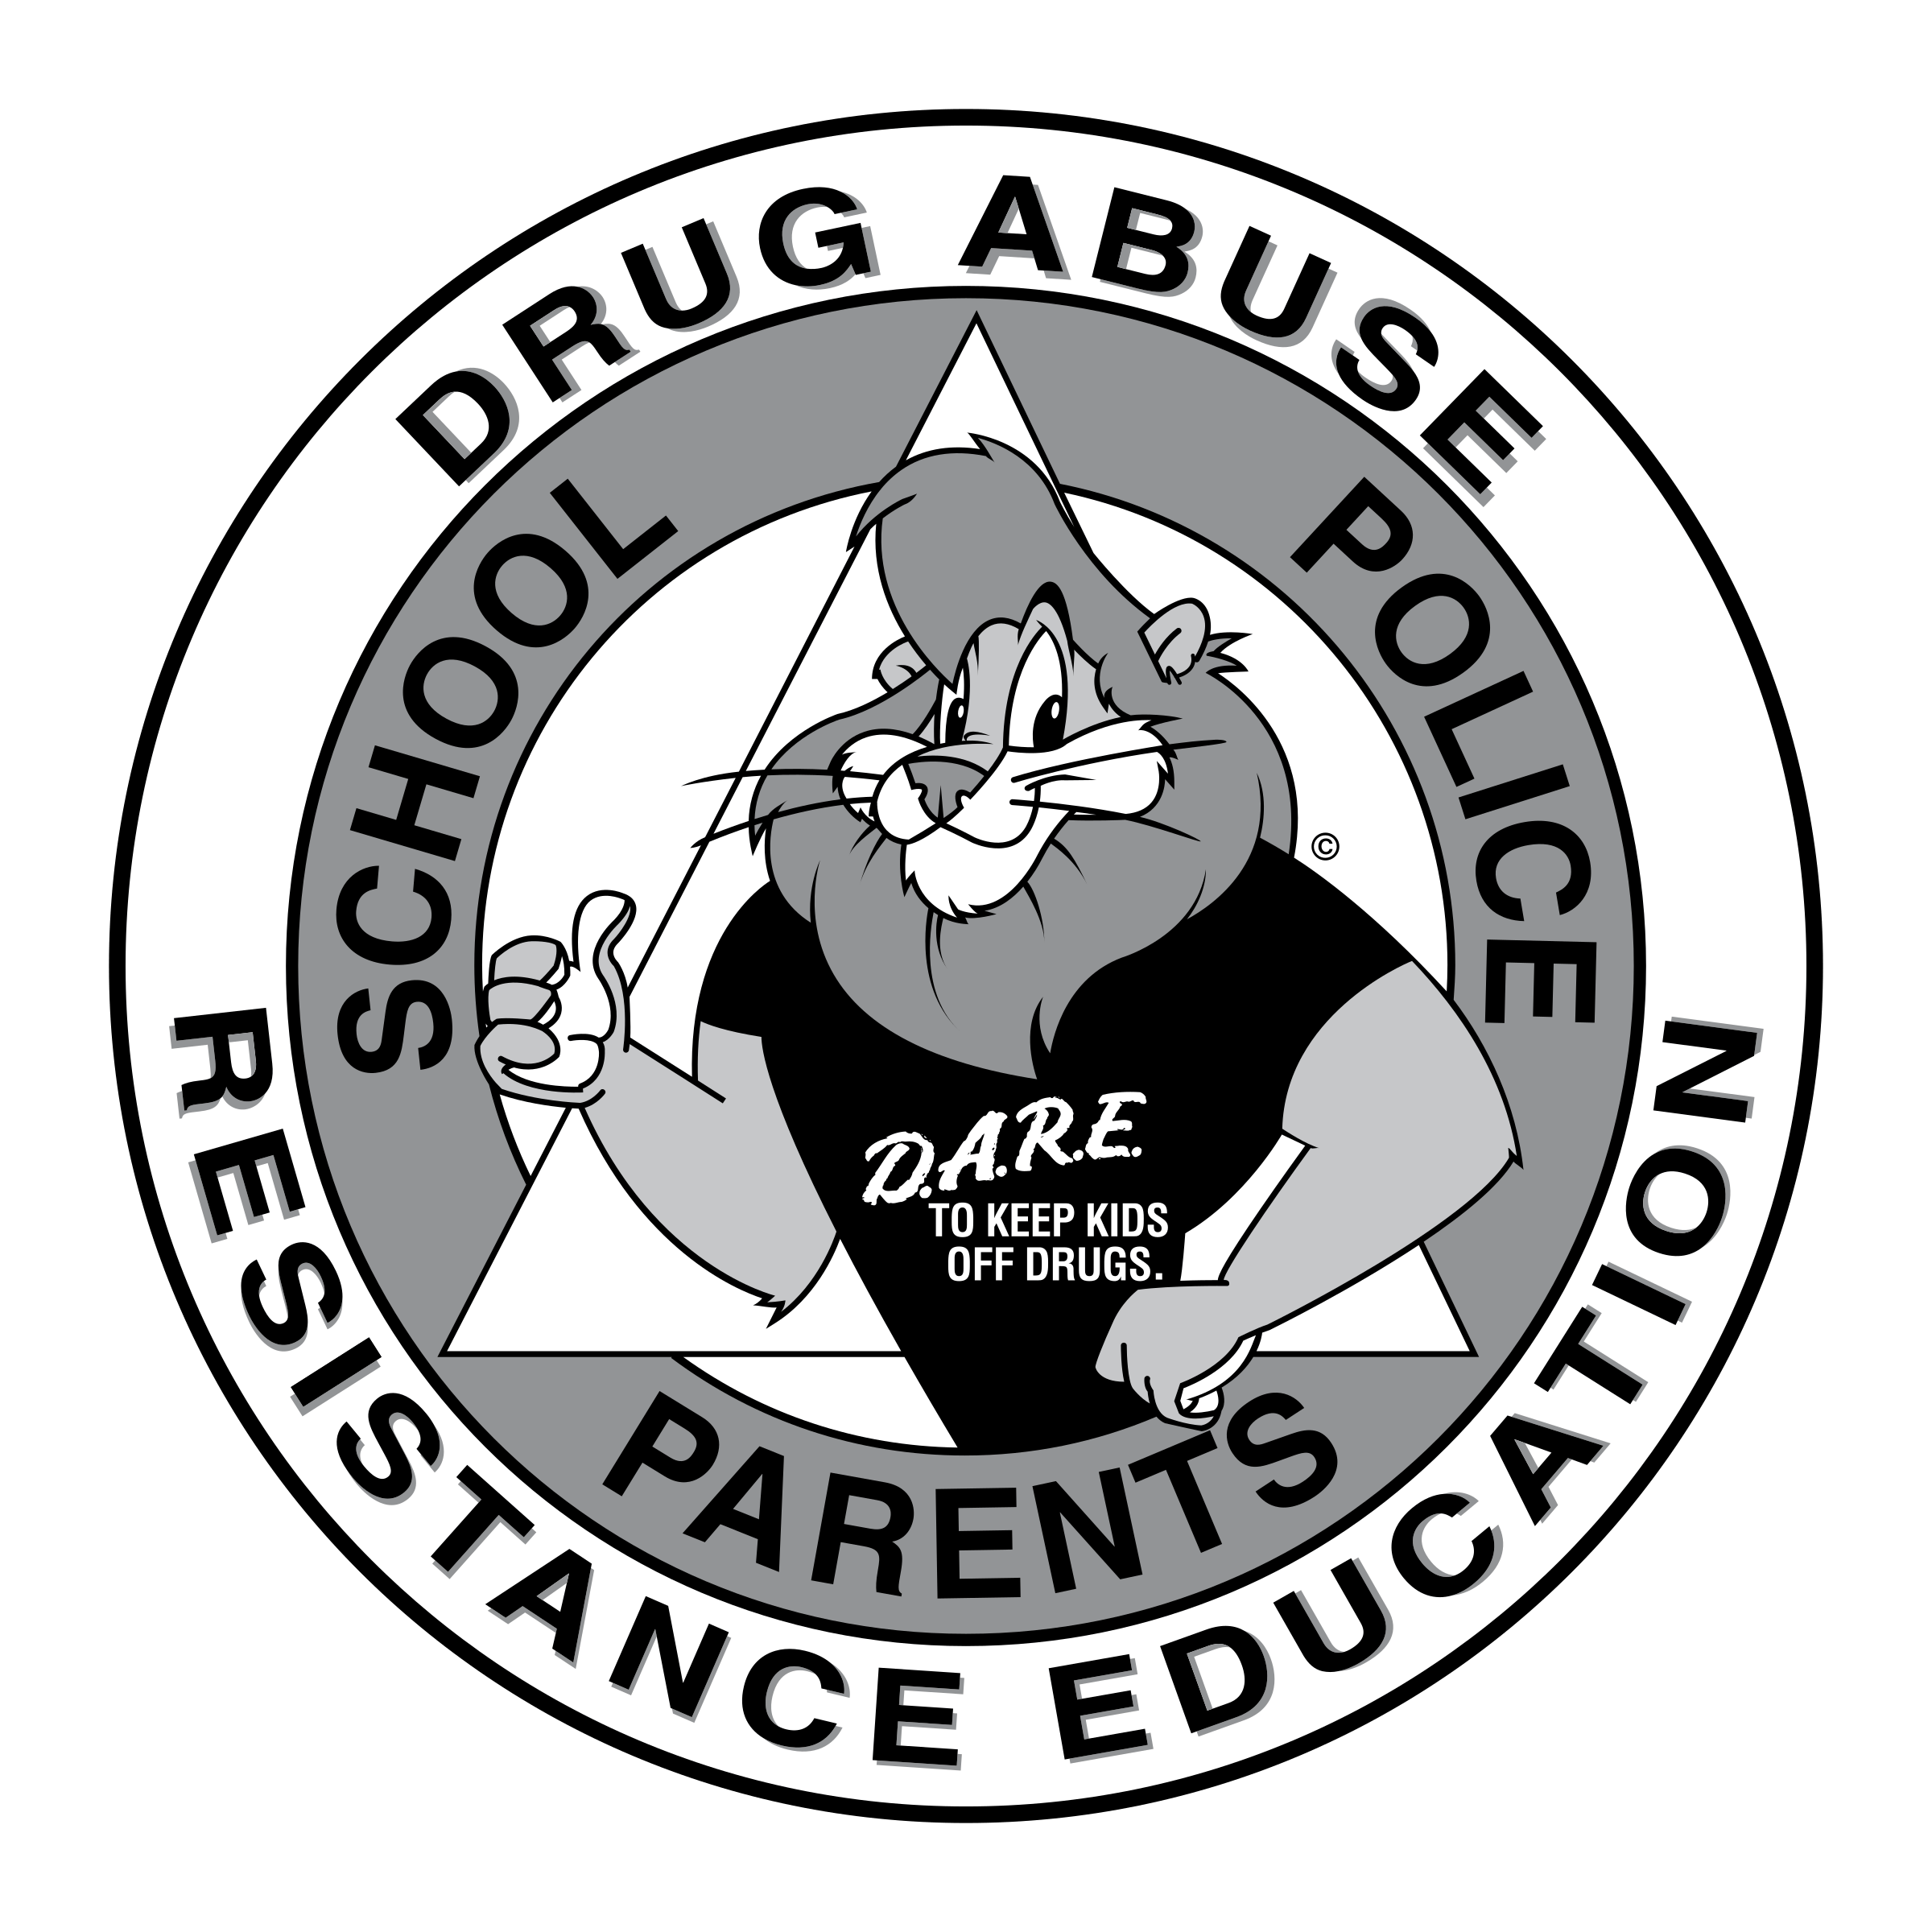 Black Education Logo - Drug Abuse Resistance Education Logo PNG Transparent & SVG Vector ...